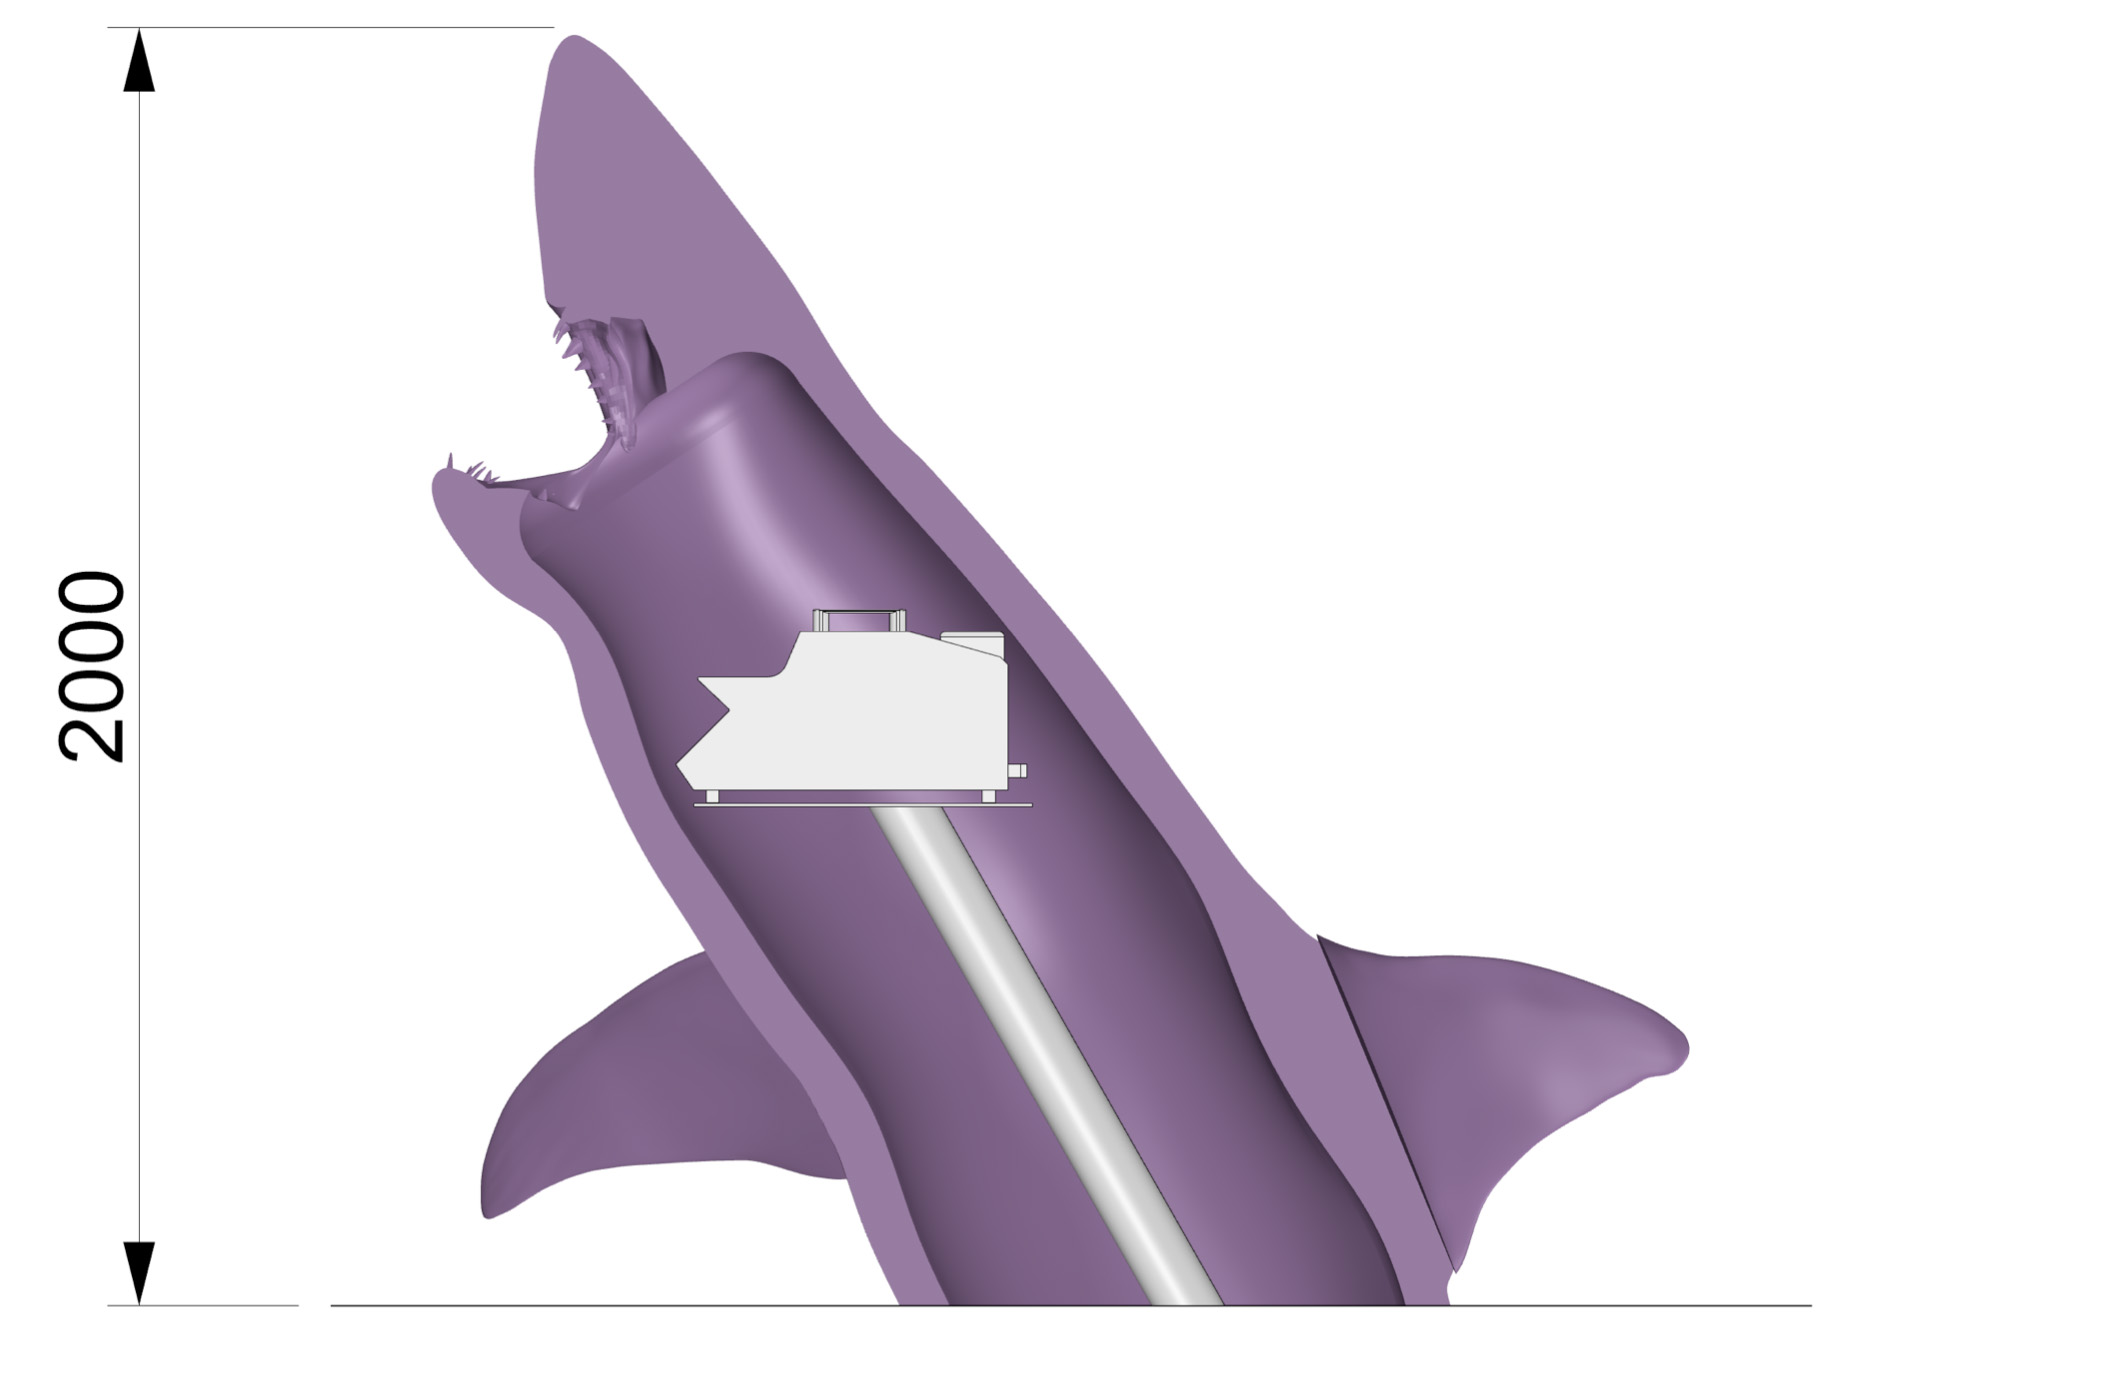 White shark cavity for smoke machine